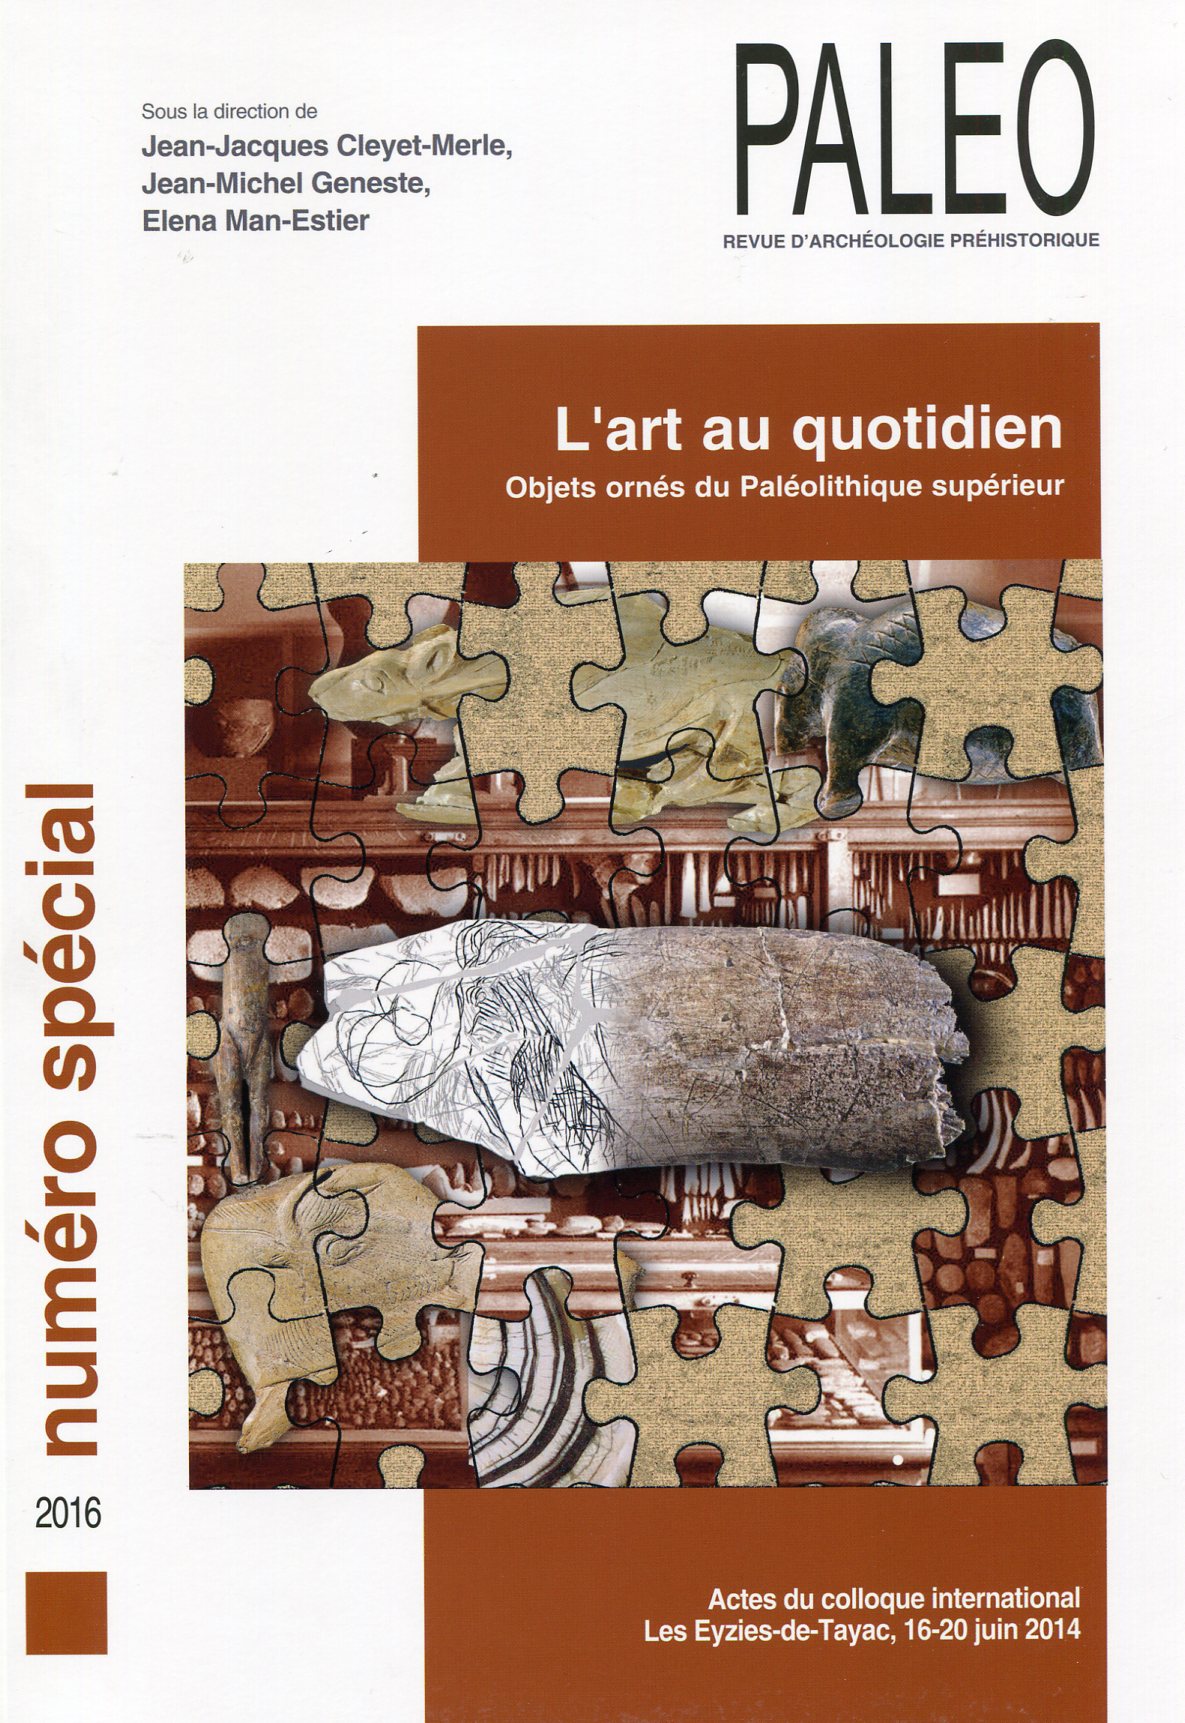 L'Art au quotidien. Objets ornés du Paléolithique supérieur, (Paléo n° spécial), (act. coll. int. Les Eyzies-de-Tayac, juin 2014 ), 2016, 637 p.